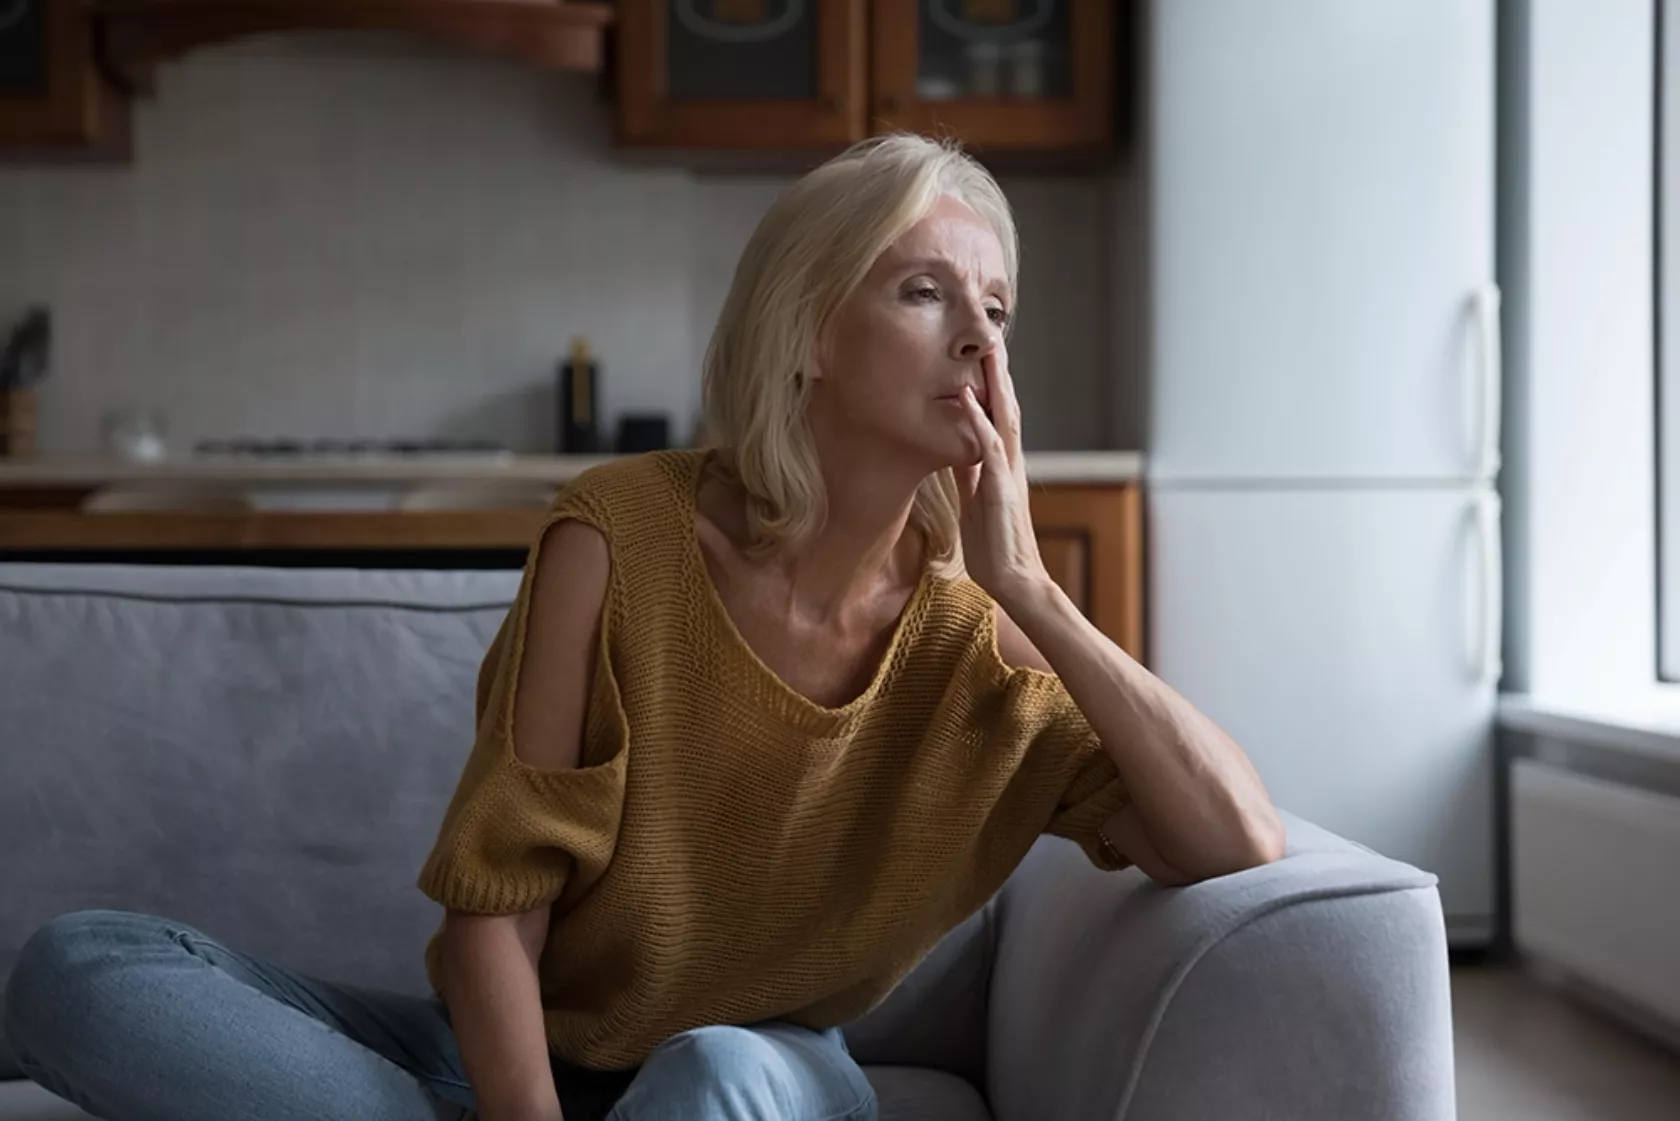 Frau in ihren 50ern sitzt frustriert blickend auf dem Sofa.